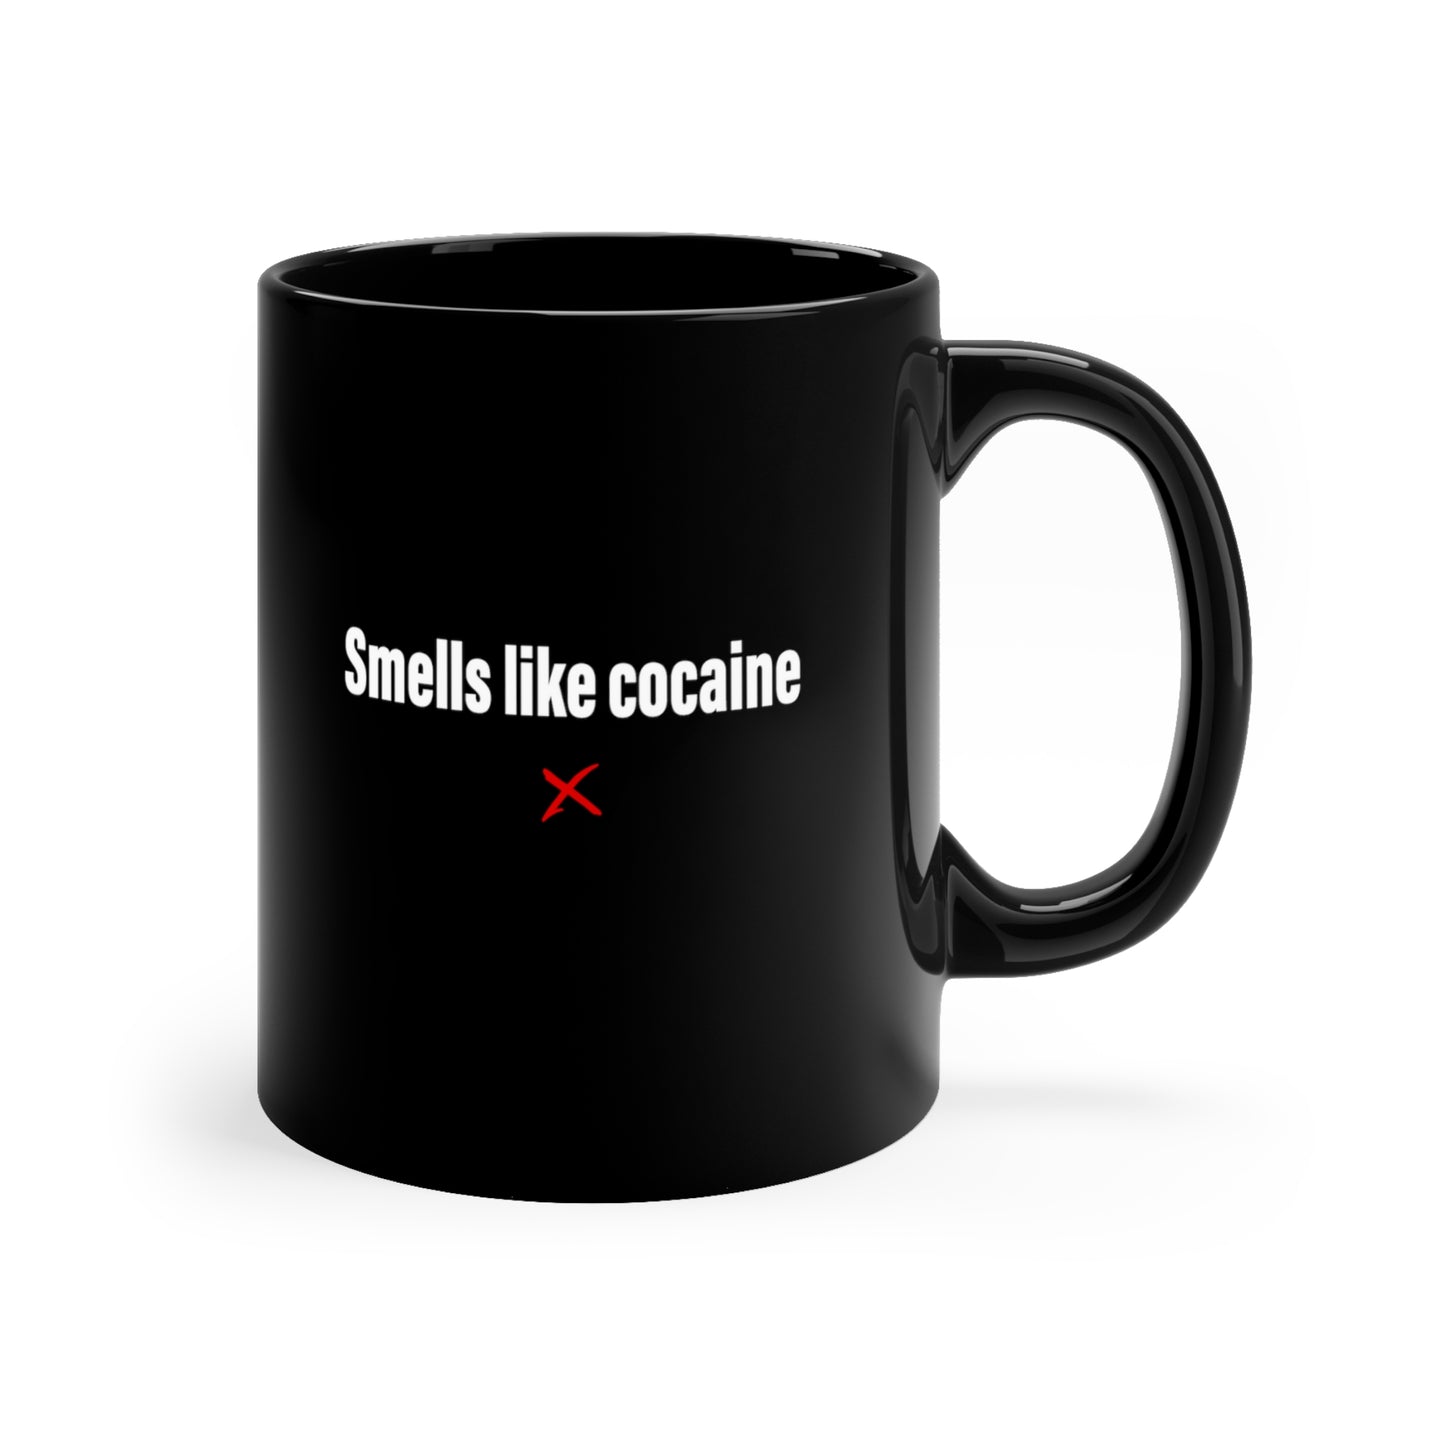 Smells like cocaine - Mug